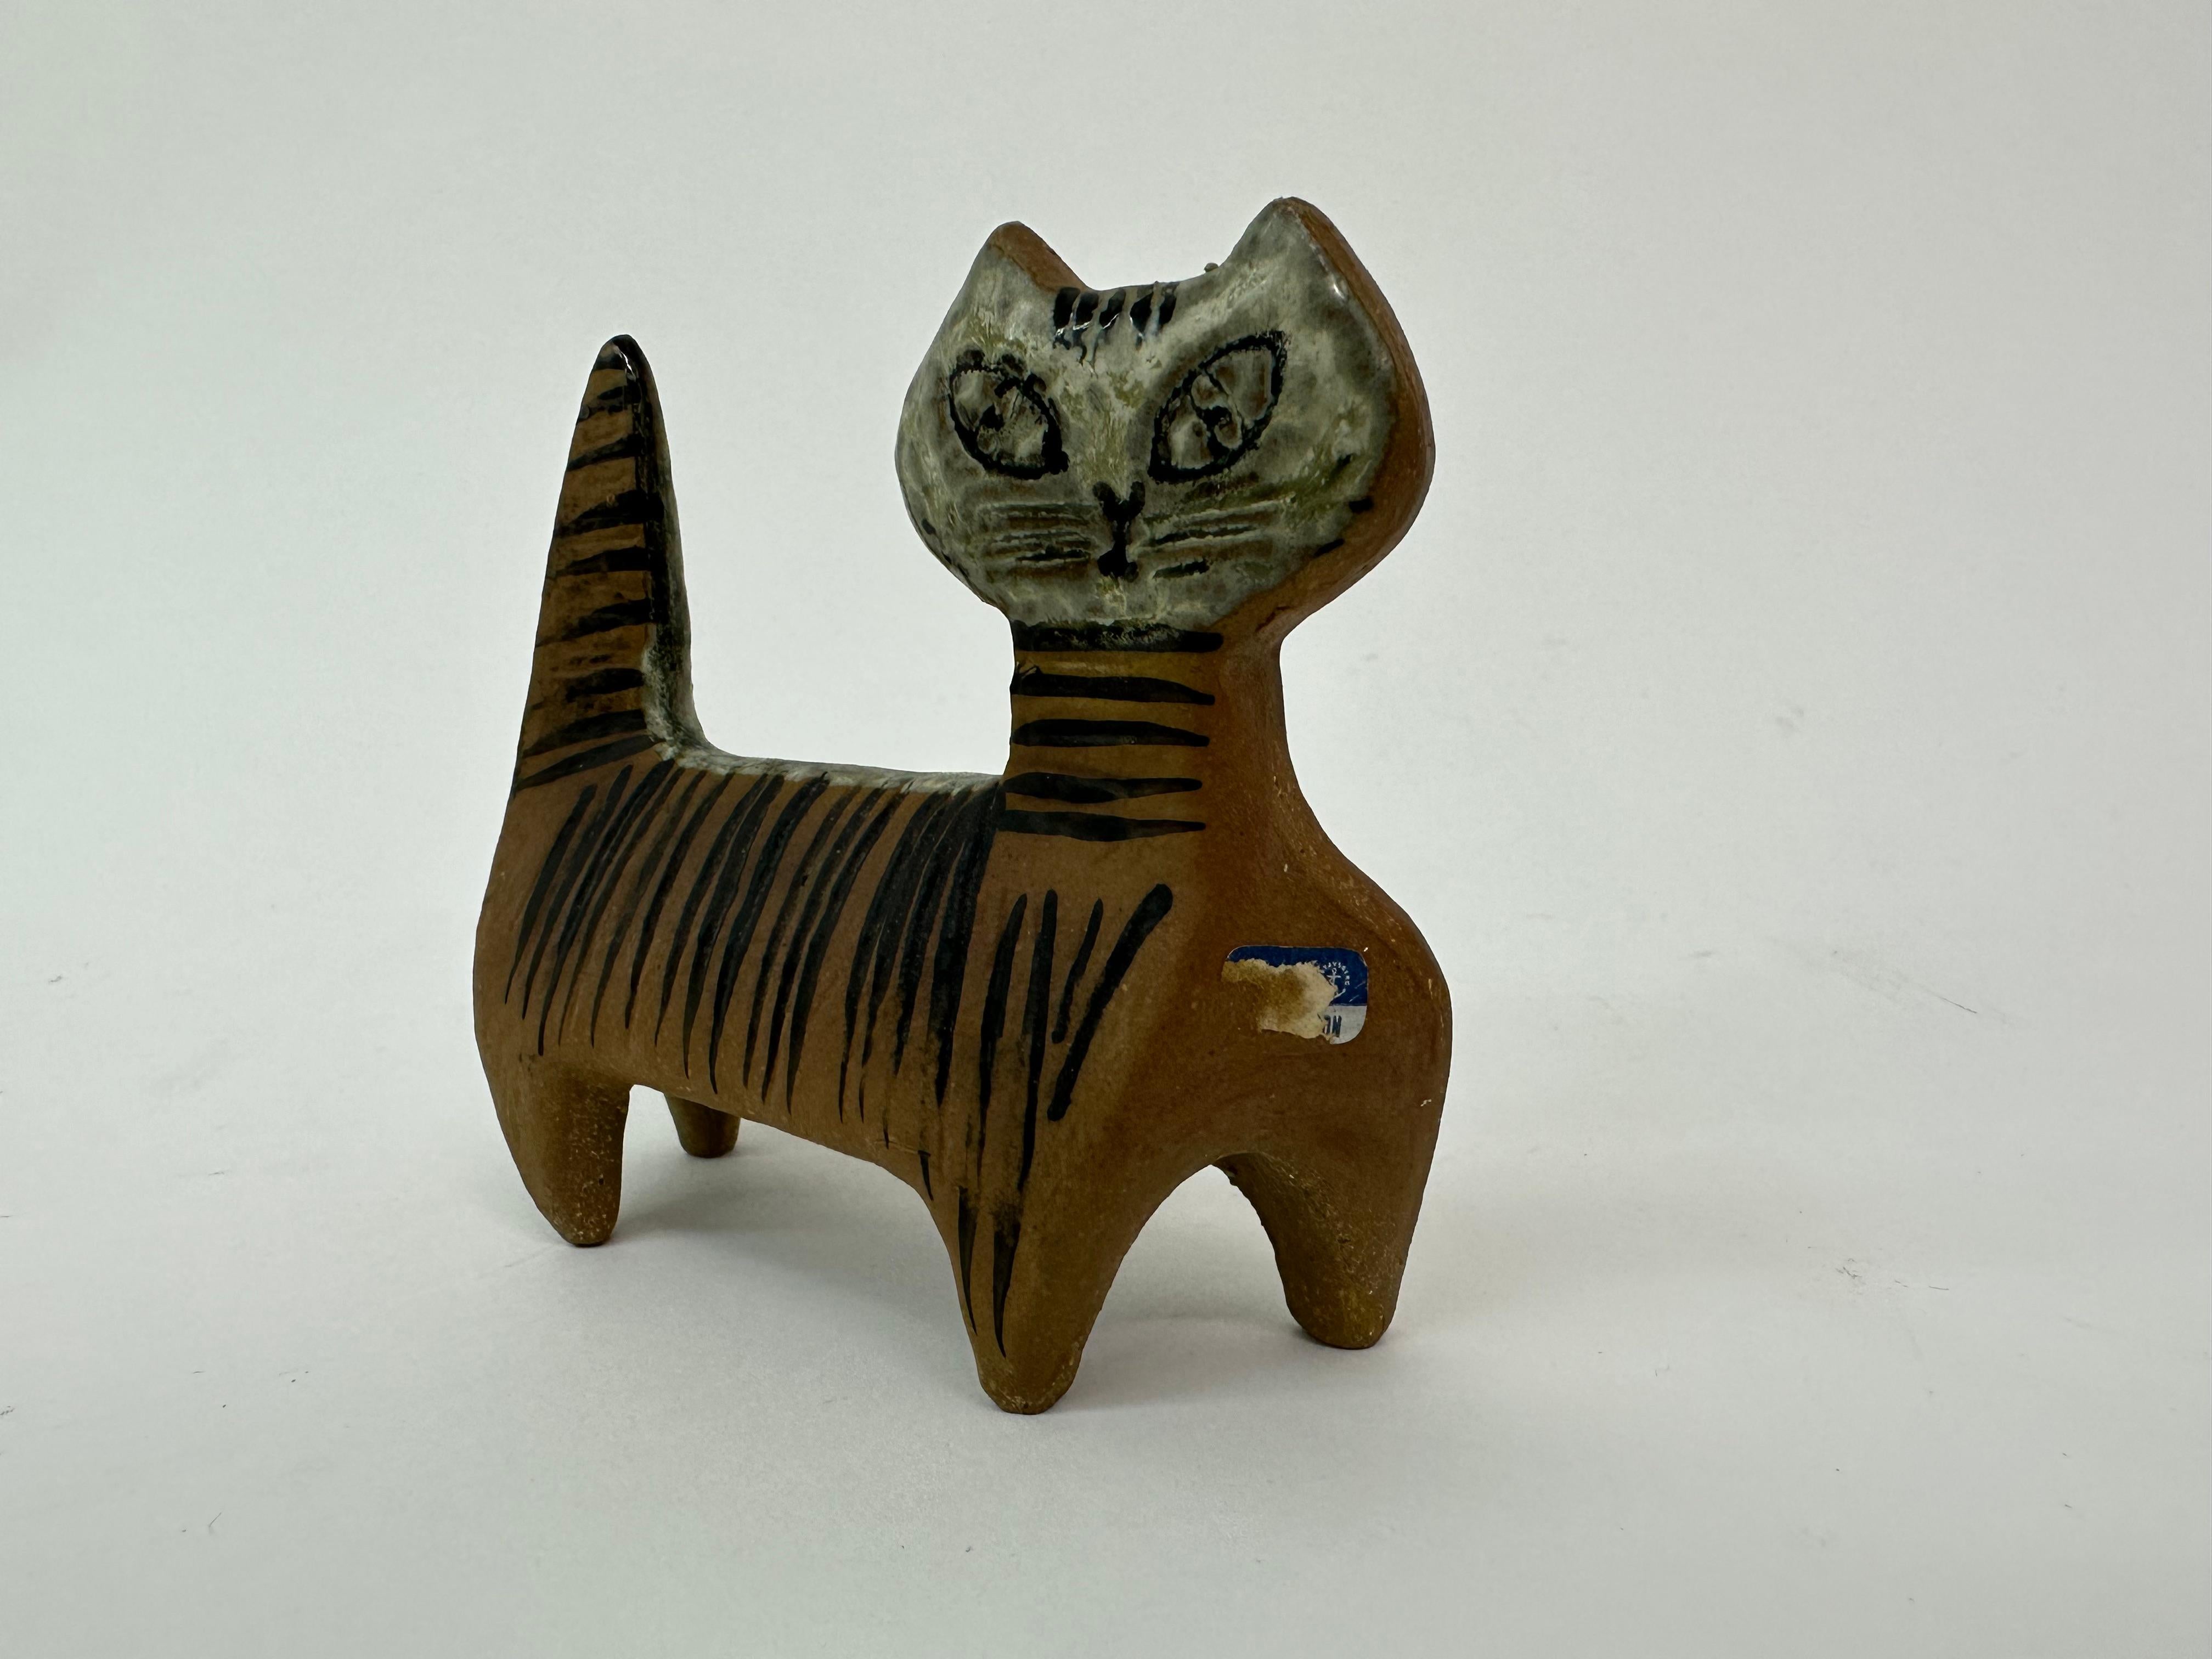 Lisa Larson ceramic cat figurine Gustavsberg Sweden.